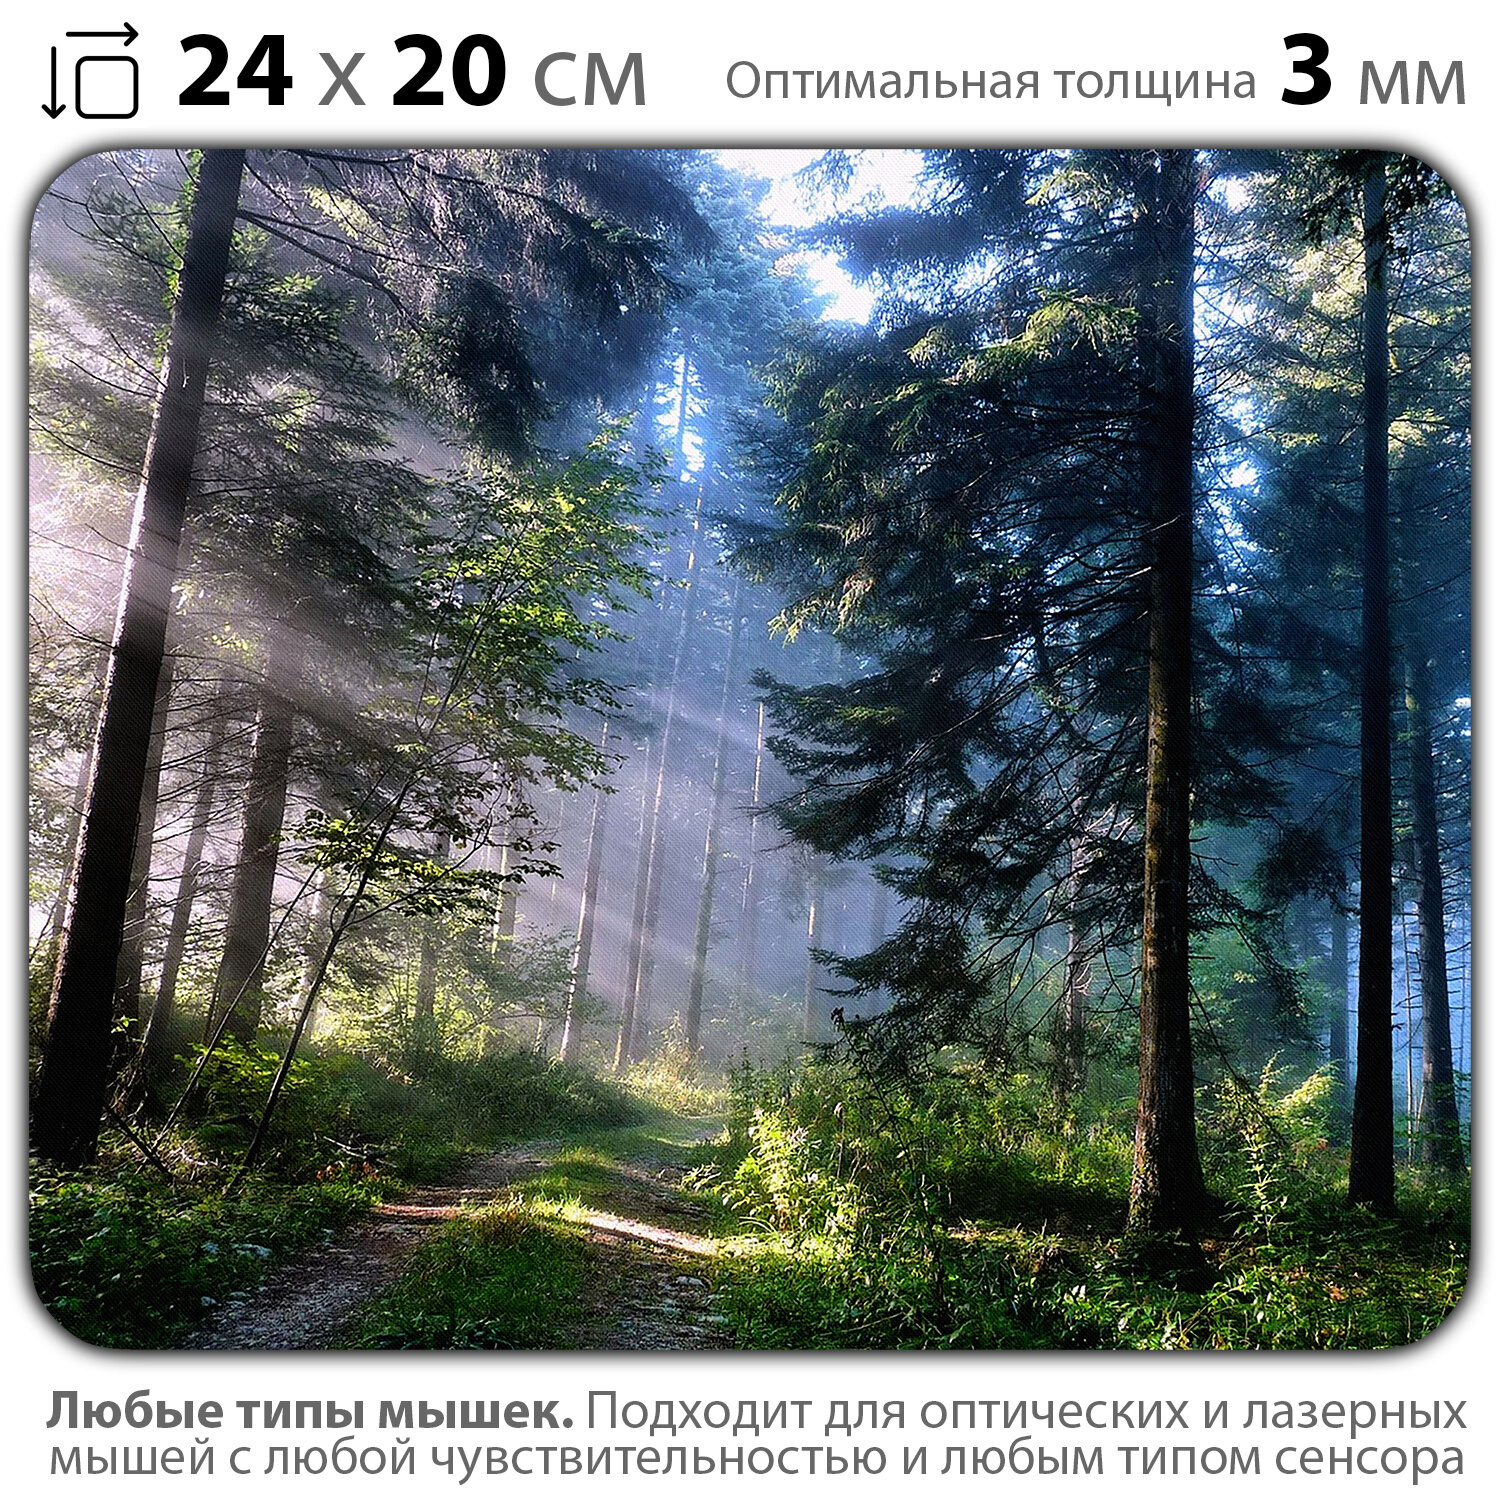 Коврик для мыши "Утро в чудесном лесу с красивыми лучами солнца" (24 x 20 см x 3 мм)